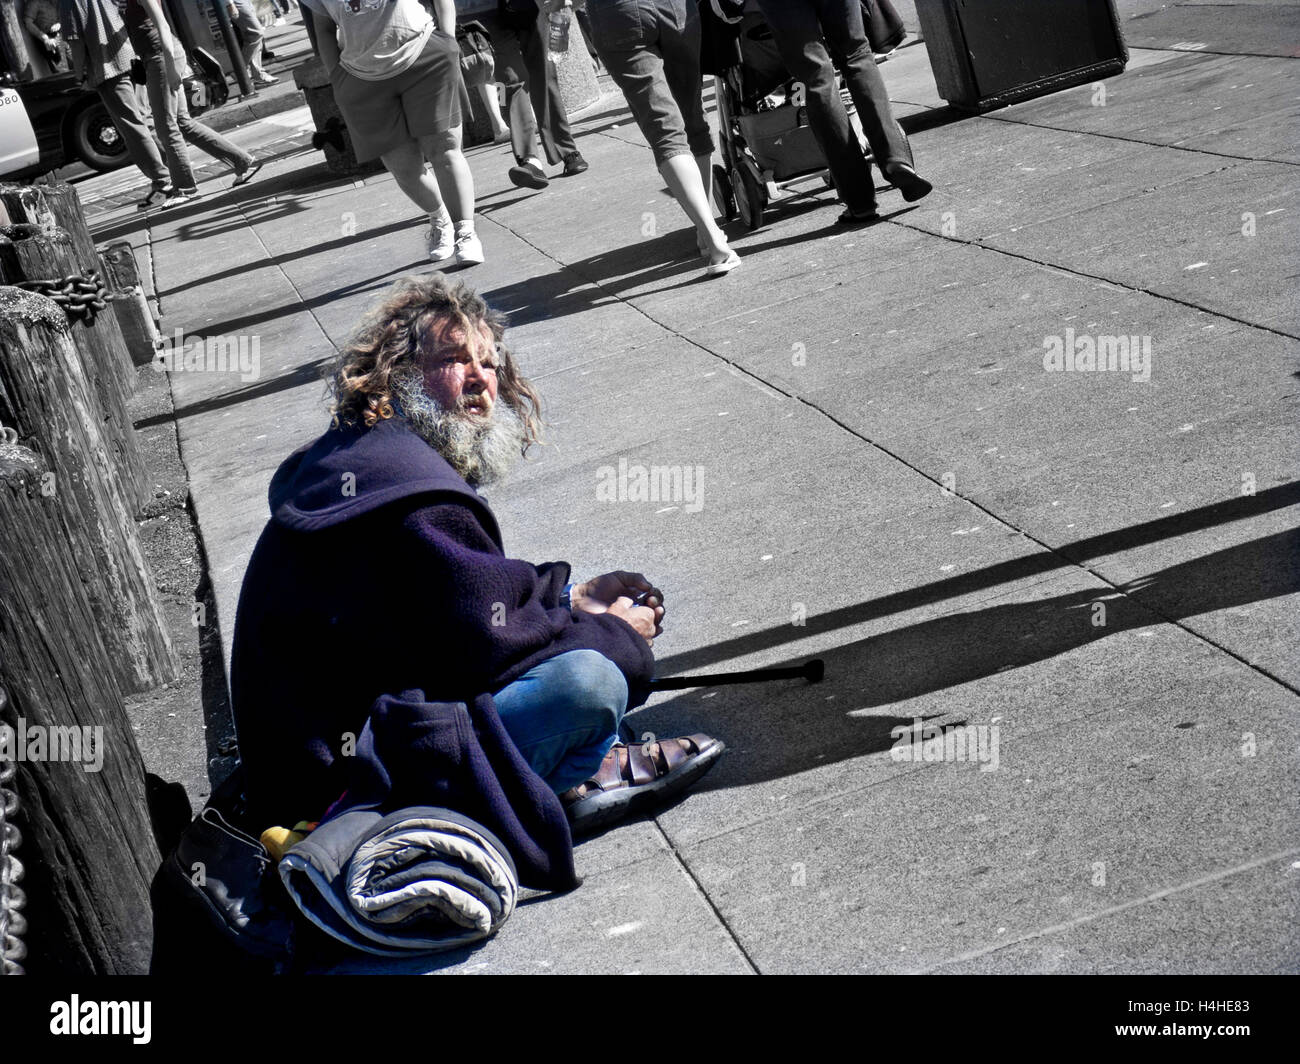 Senzatetto disabilitato l uomo di accattonaggio sul marciapiede della città con persone di passaggio (parziale B&W trattamento concettuale) Foto Stock